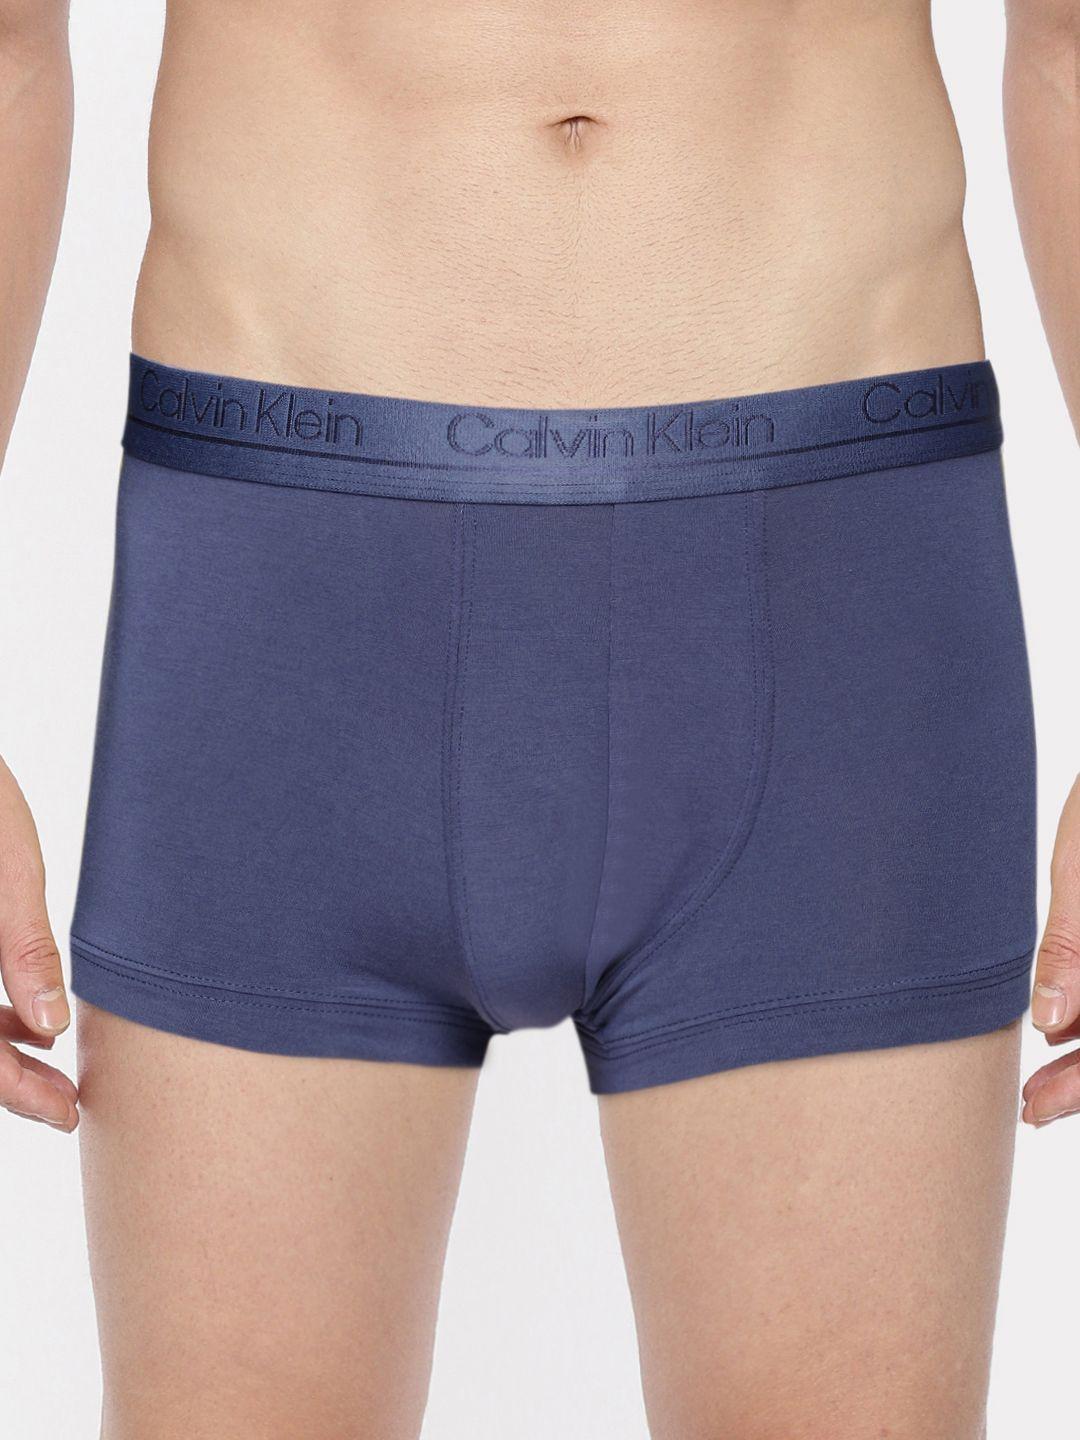 calvin-klein-underwear-men-navy-blue-solid-low-rise-trunks-nb24547z6-7z6